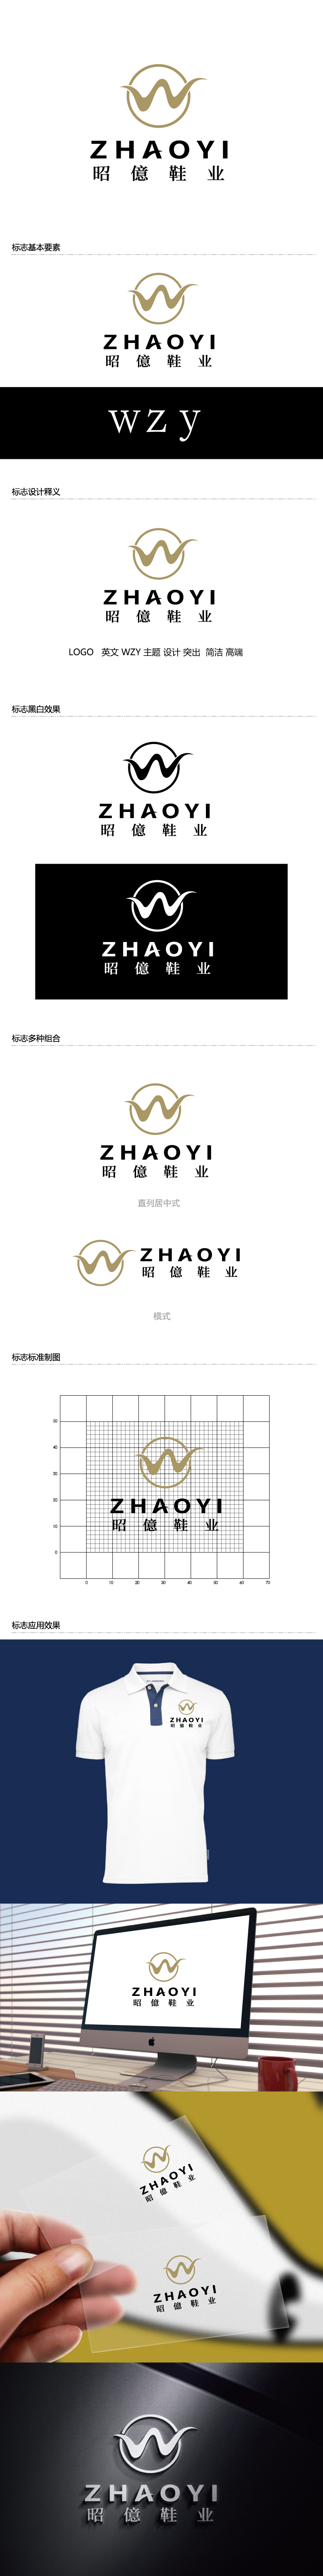 张俊的昭億鞋业logo设计